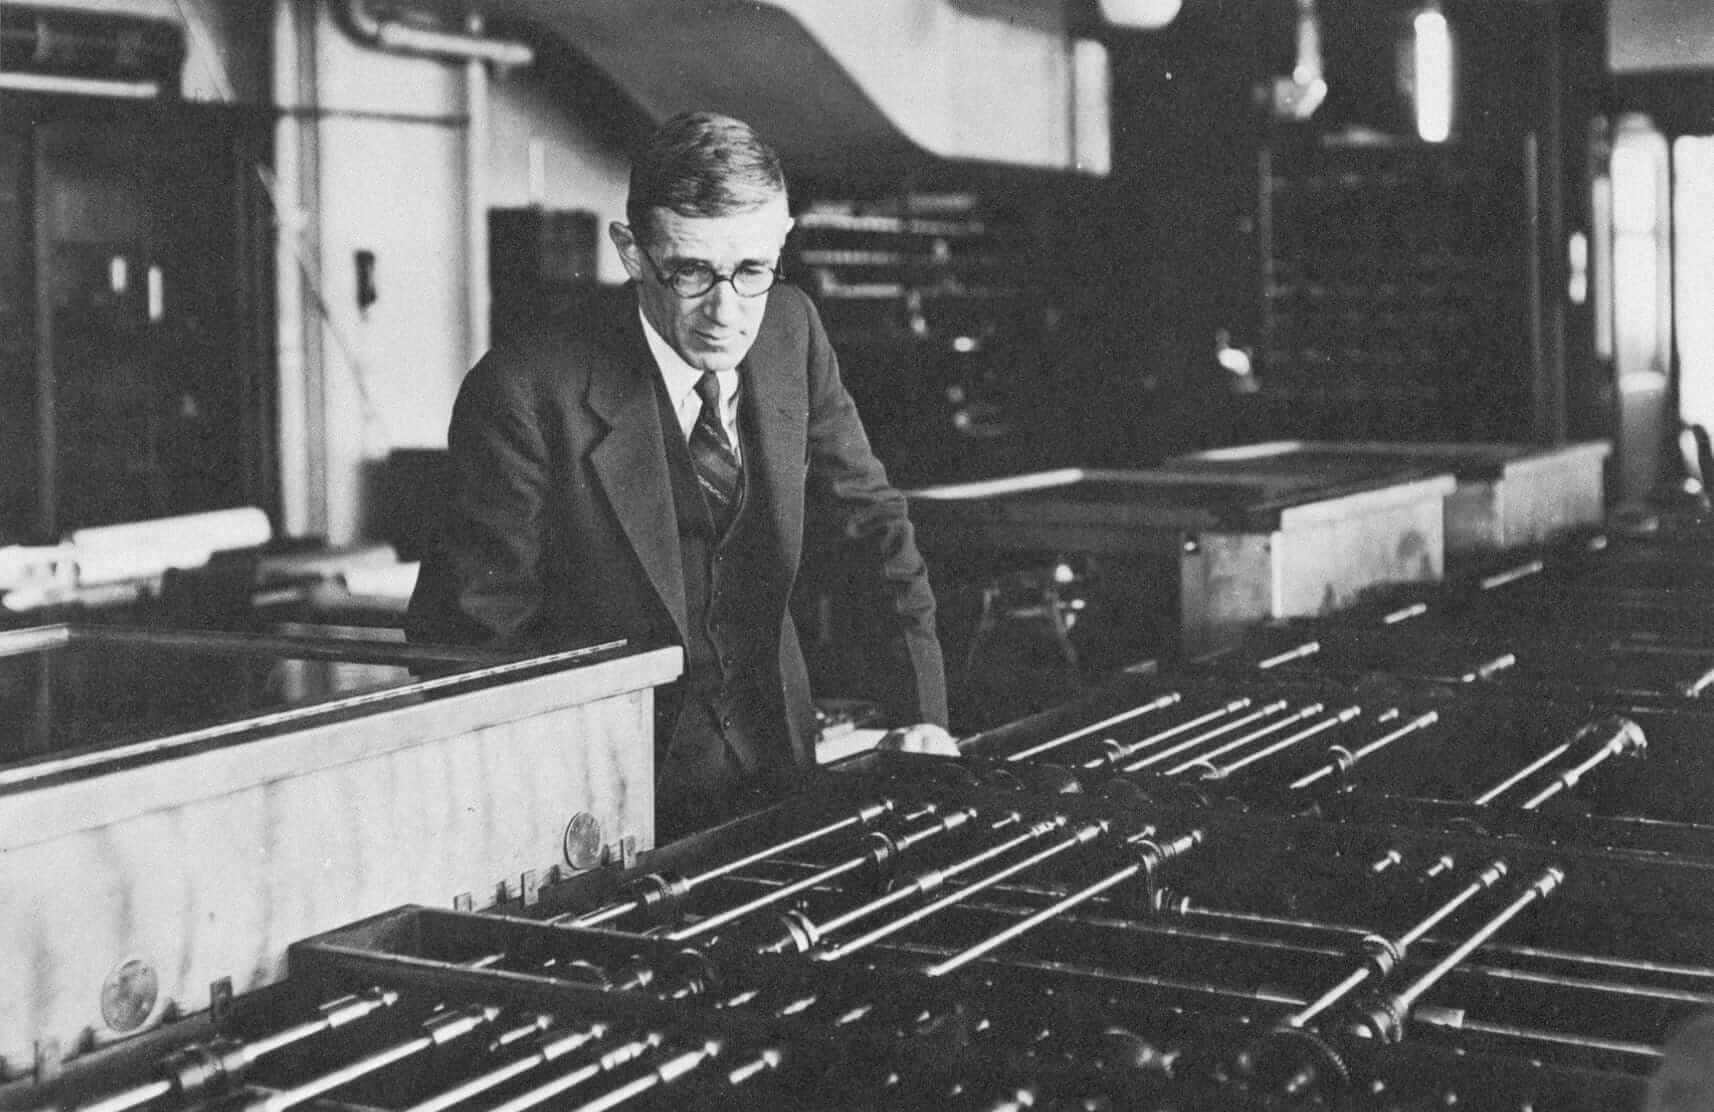 Den amerikanske ingeniør, Vannevar Bush, skaberen af Memex-apparatet, en forløber for nutidens database. Kilde: wikimedia.org